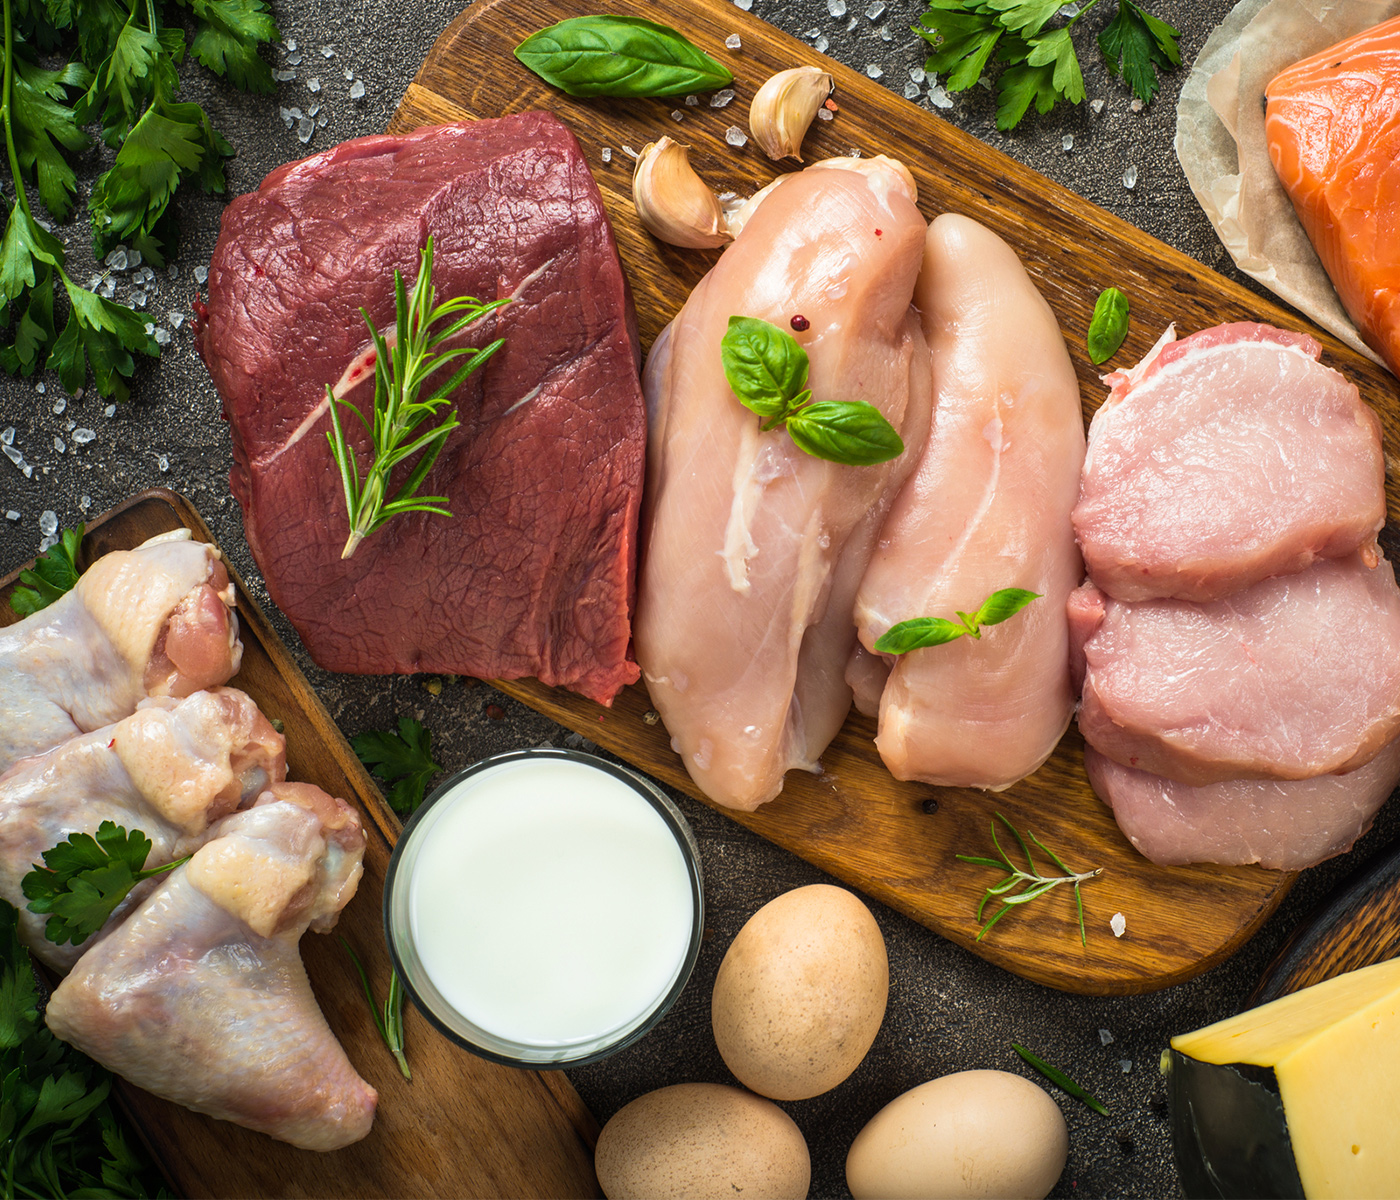 La carne, los huevos y la leche, fuentes esenciales de nutrientes según un informe de la FAO